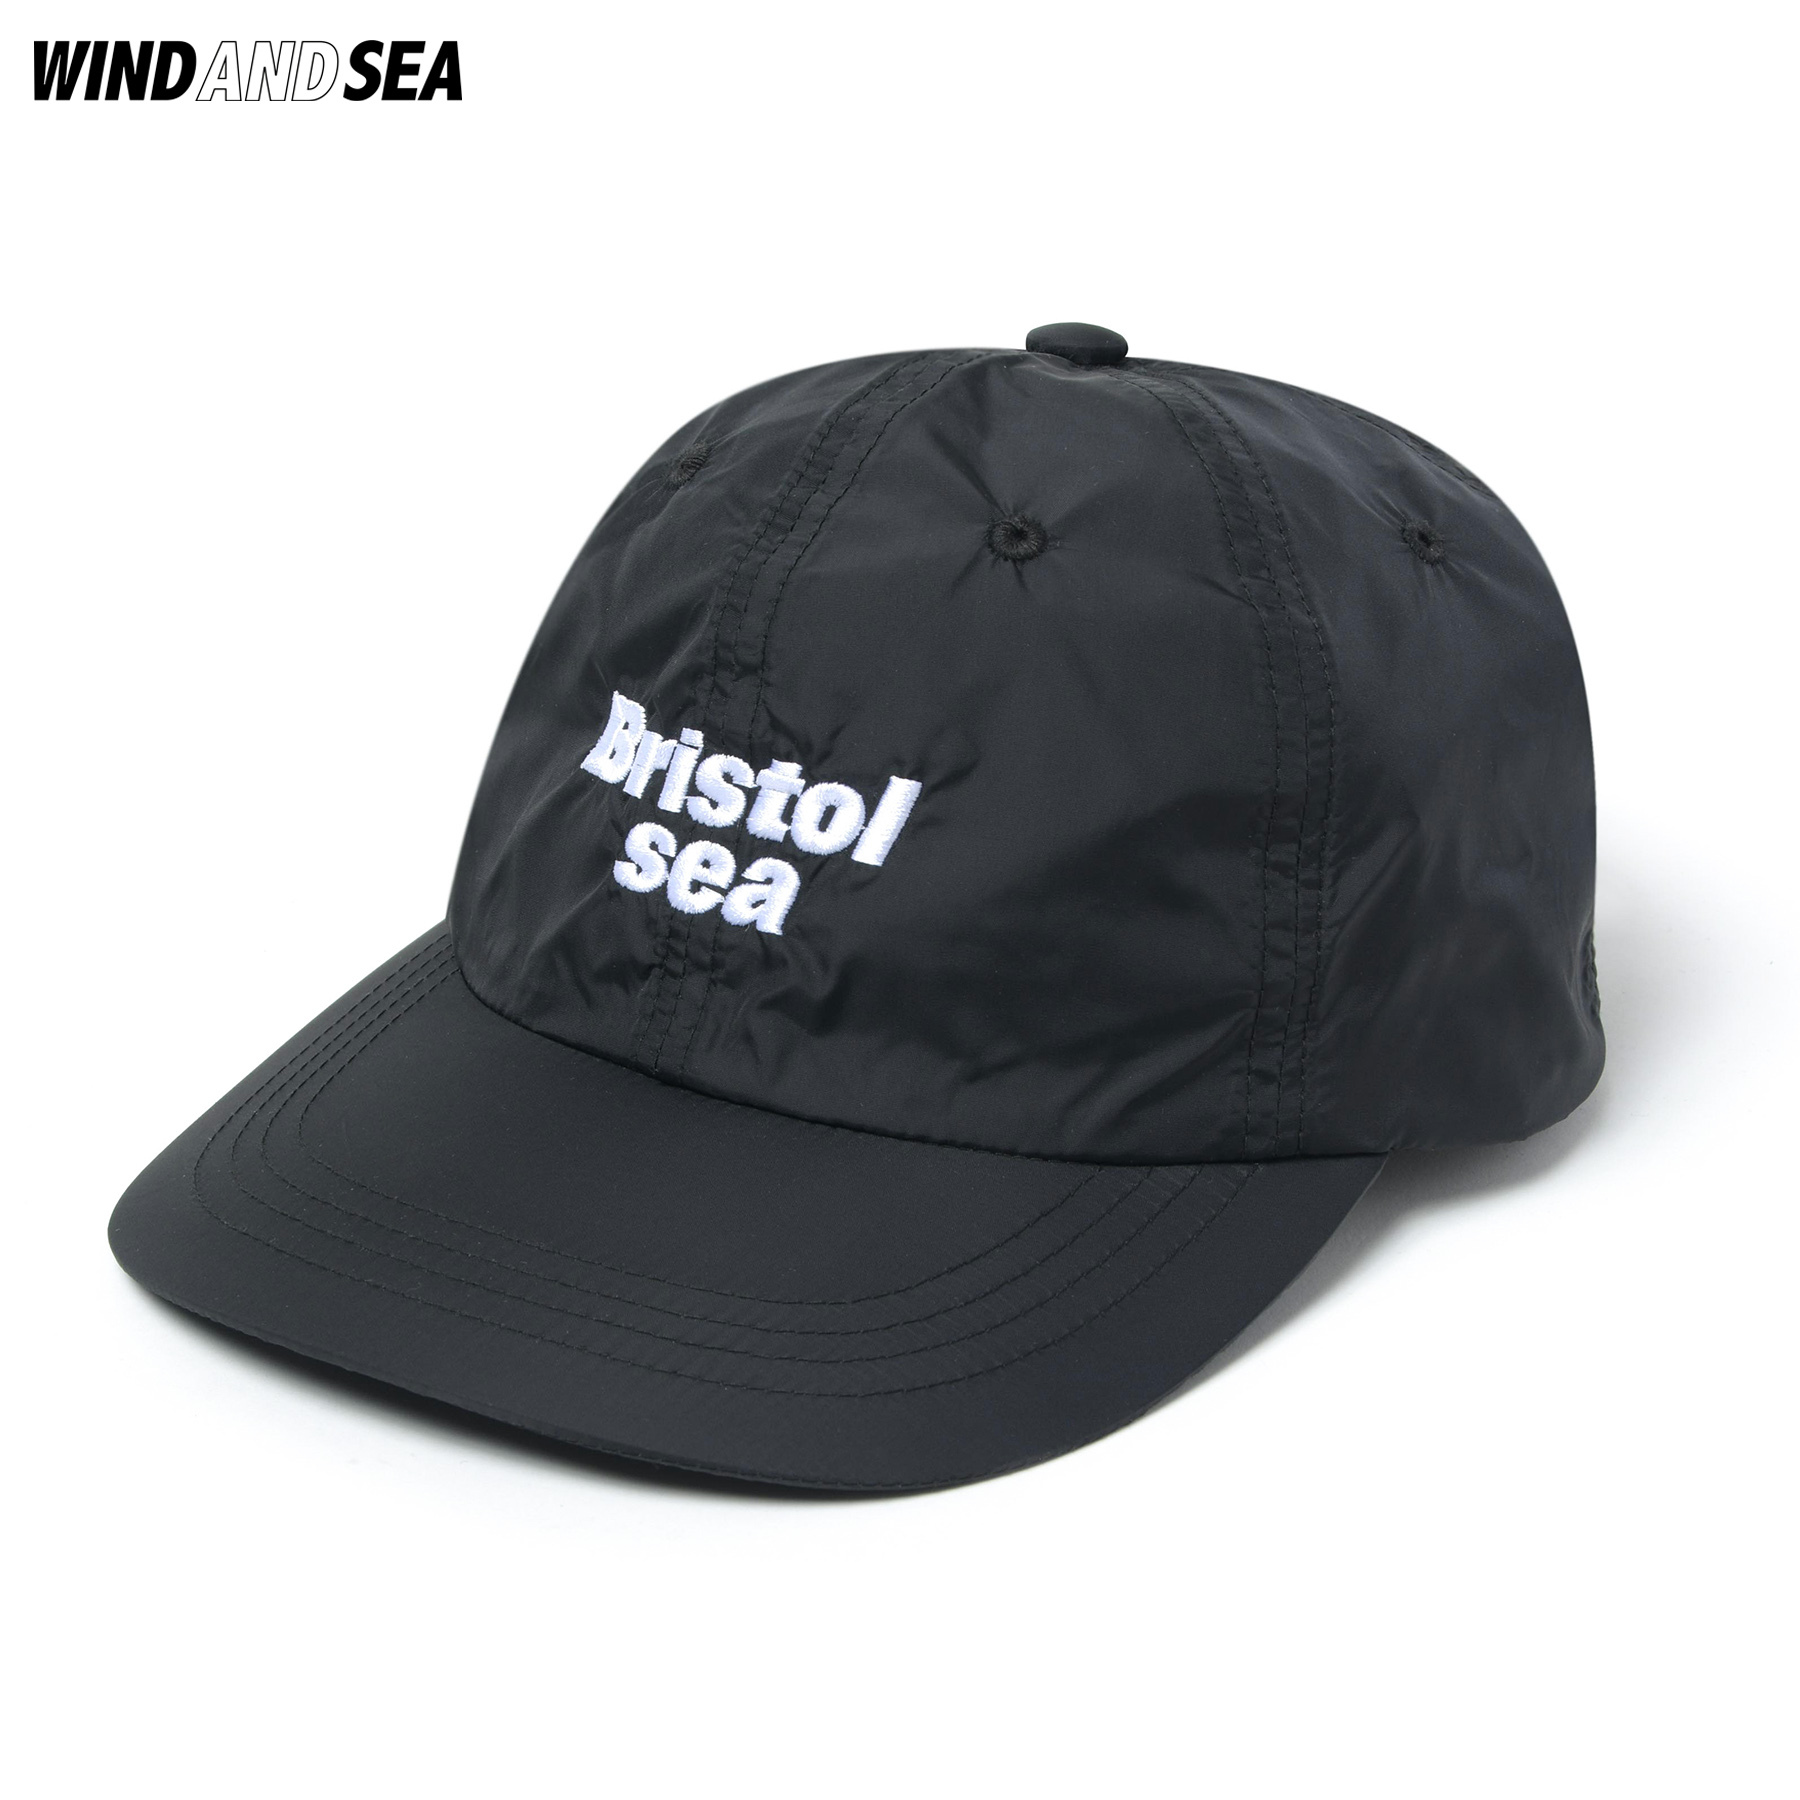 日本現貨WIND AND SEA BRISTOL SEA NYLON TEAM CAP